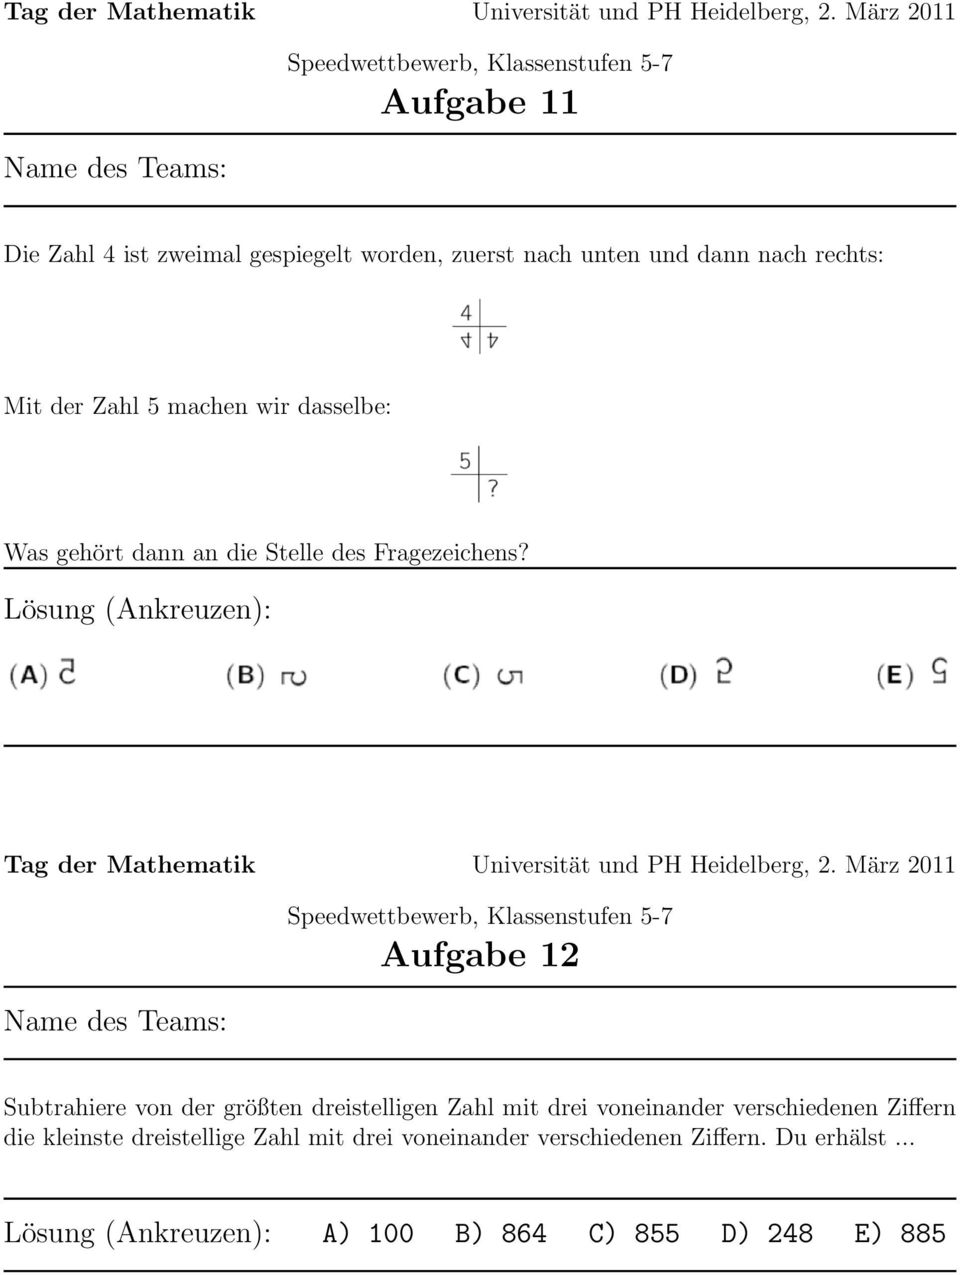 Lösung (Ankreuzen): Aufgabe 12 Subtrahiere von der größten dreistelligen Zahl mit drei voneinander